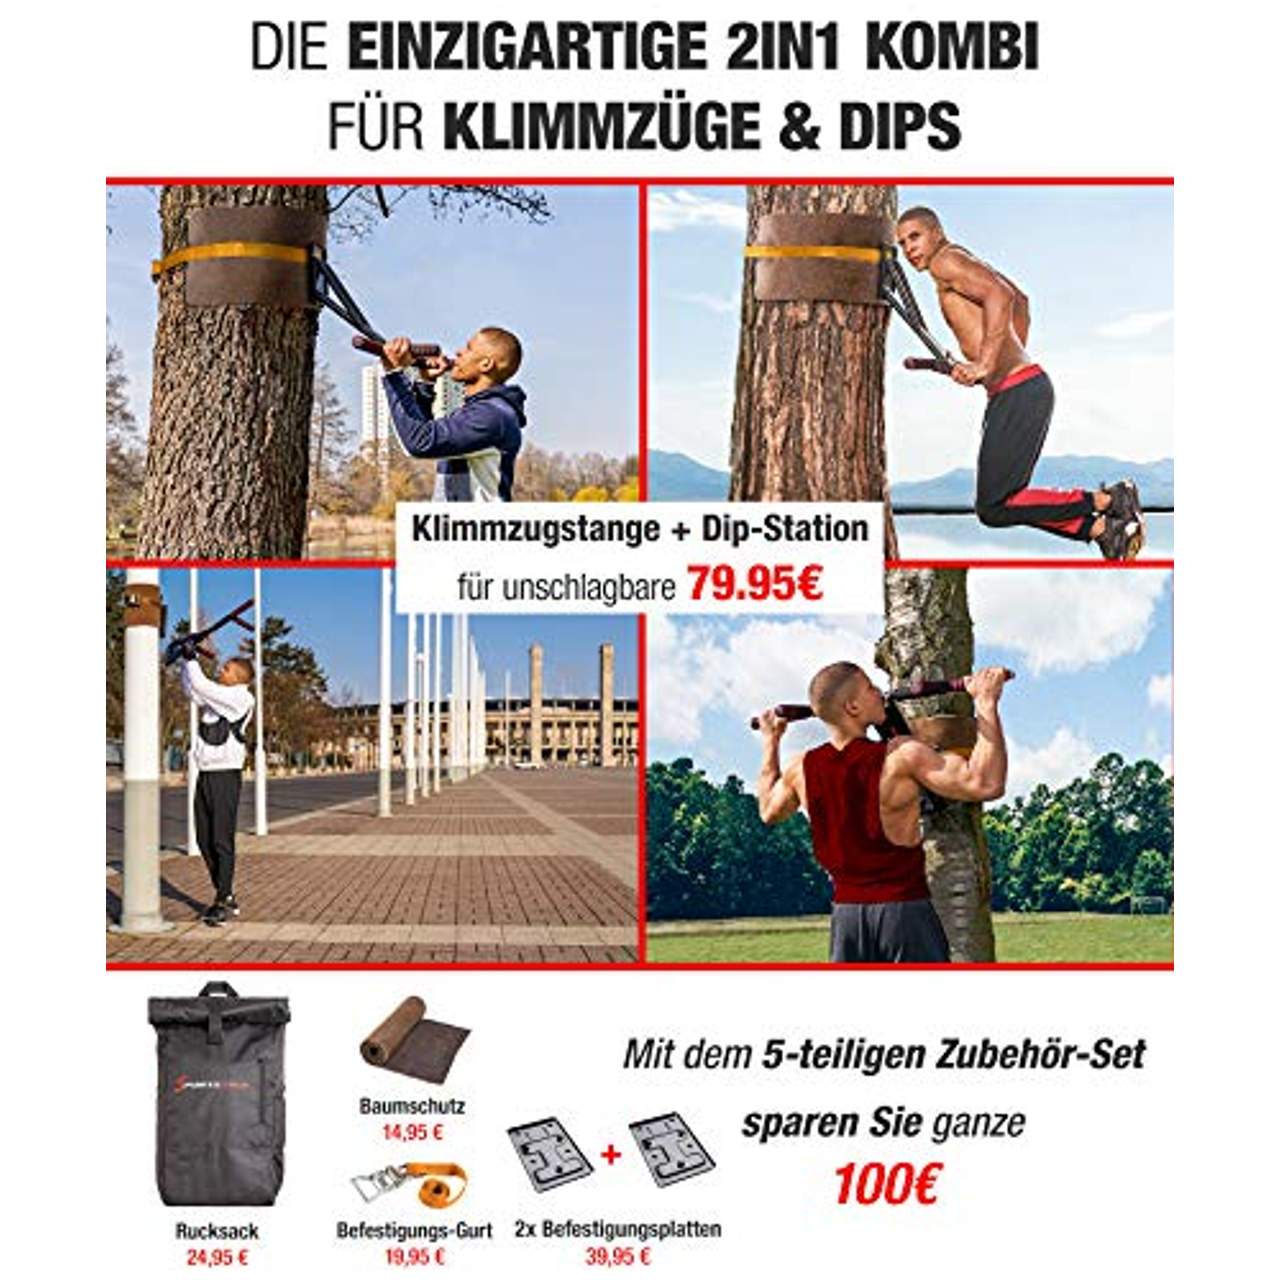 Sportstech Premium 2in1 Klimmzugstange & Dip Bar KS700